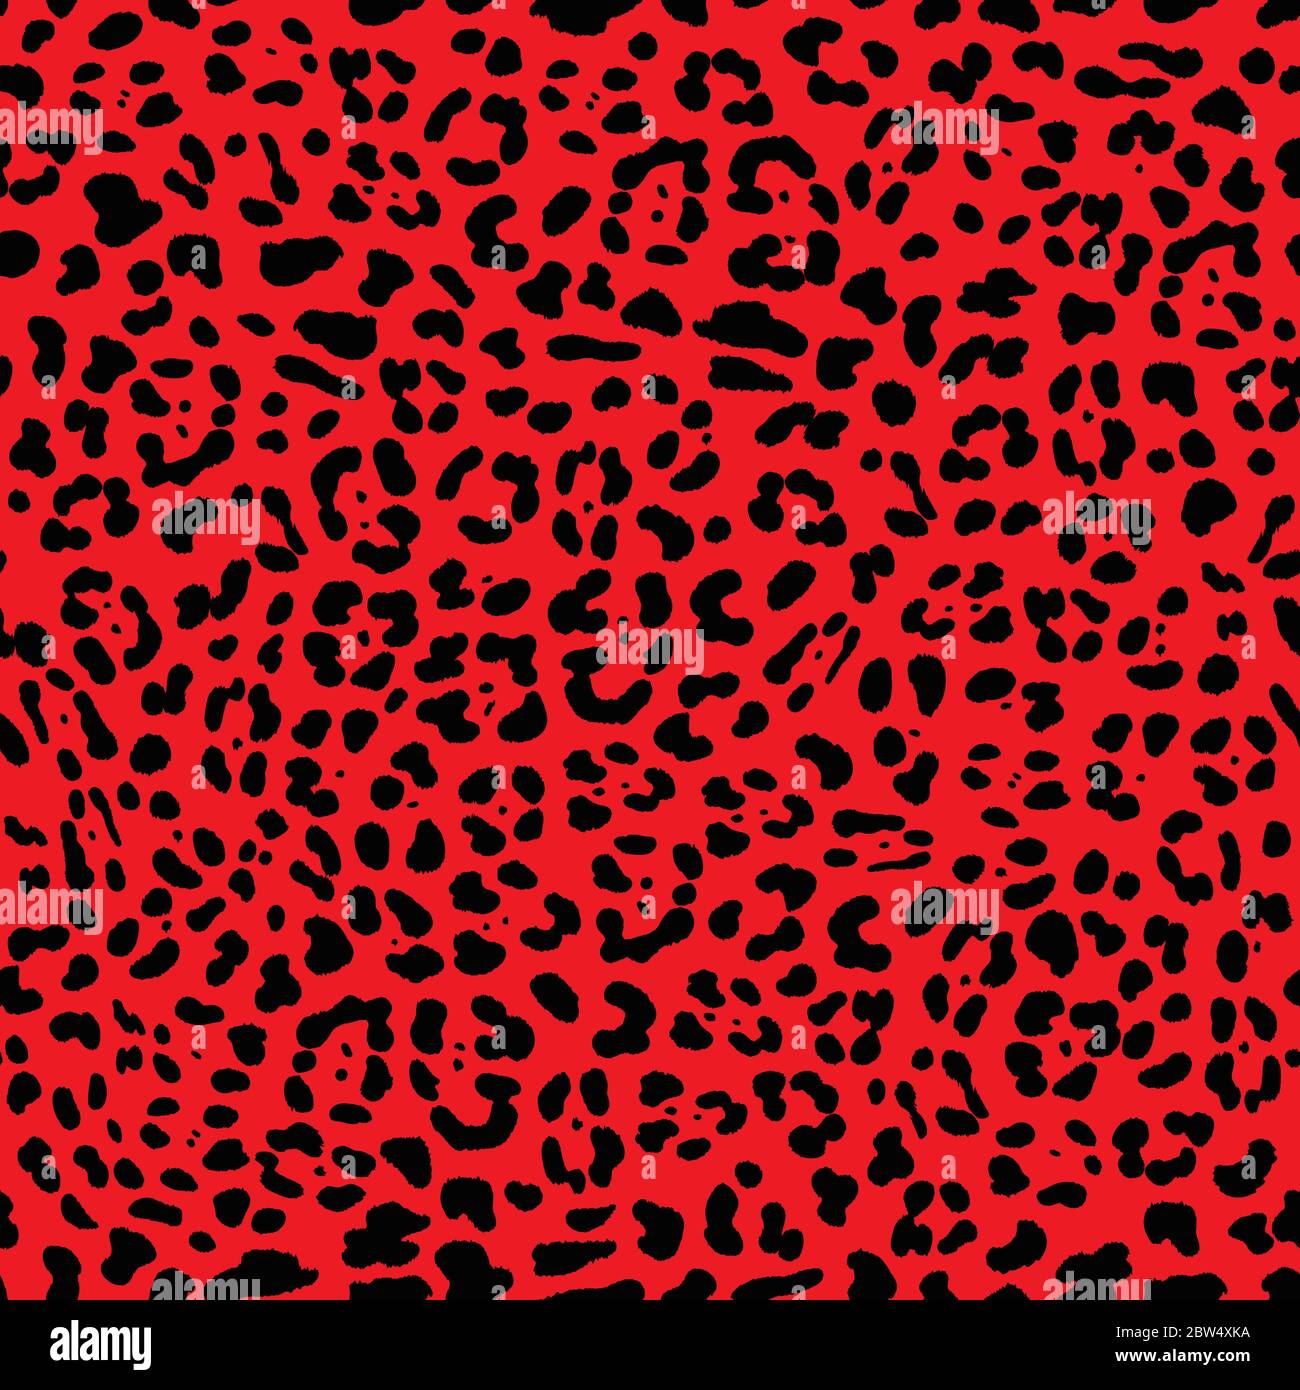 Stile punk rock anni '80. Motivo senza cuciture Faux Textured Jaguar/Leopard con macchie nere su sfondo rosso brillante. Illustrazione Vettoriale